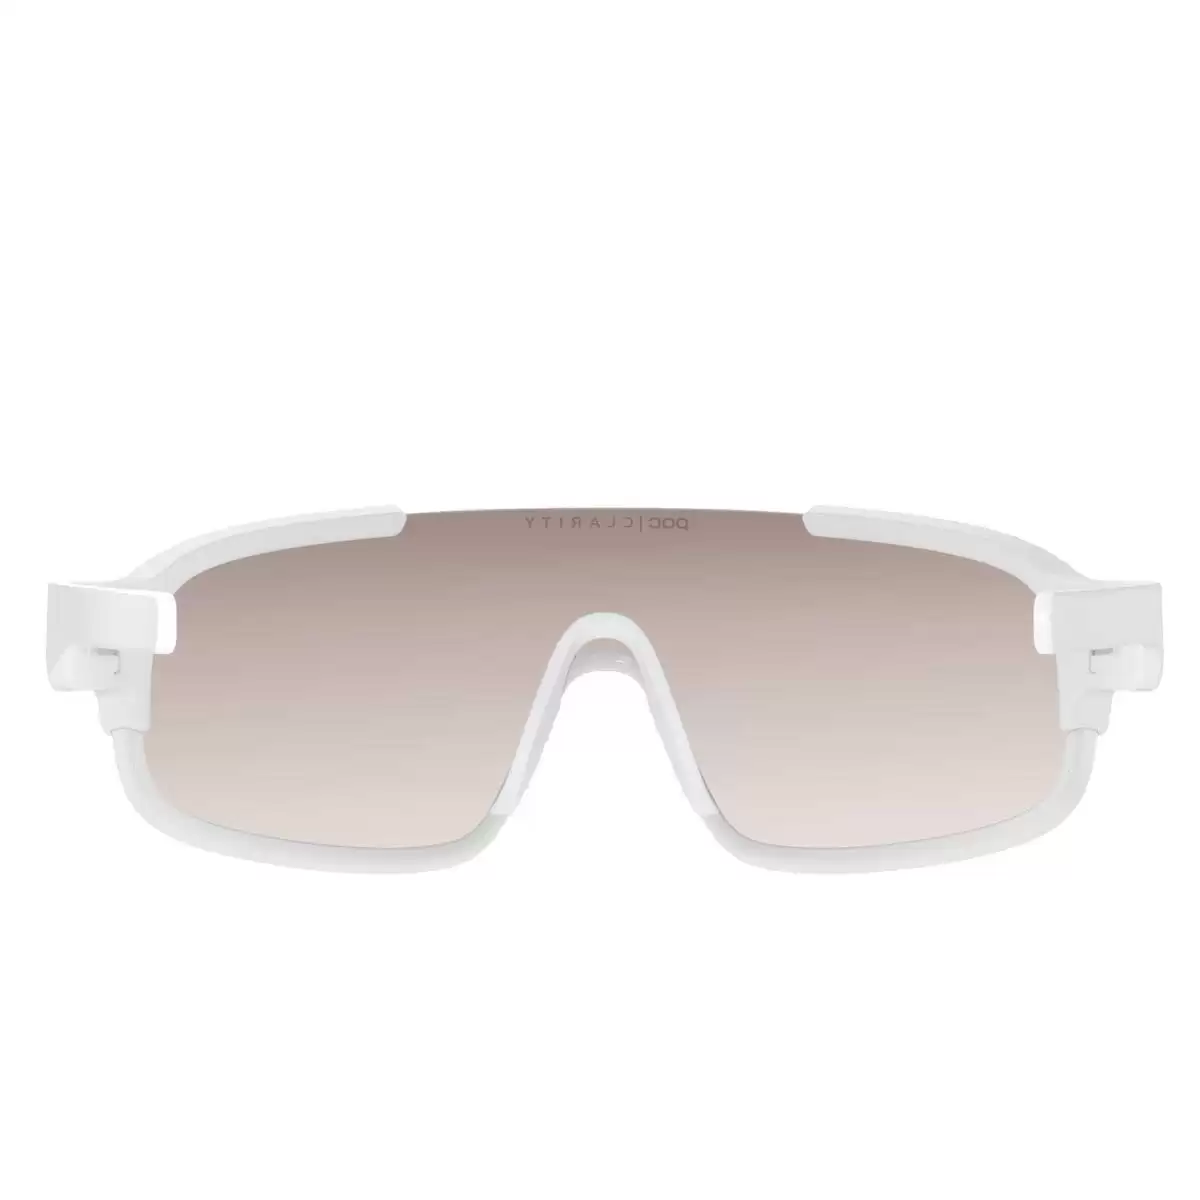 Crave gafas de sol blanco claridad lente marrón #2